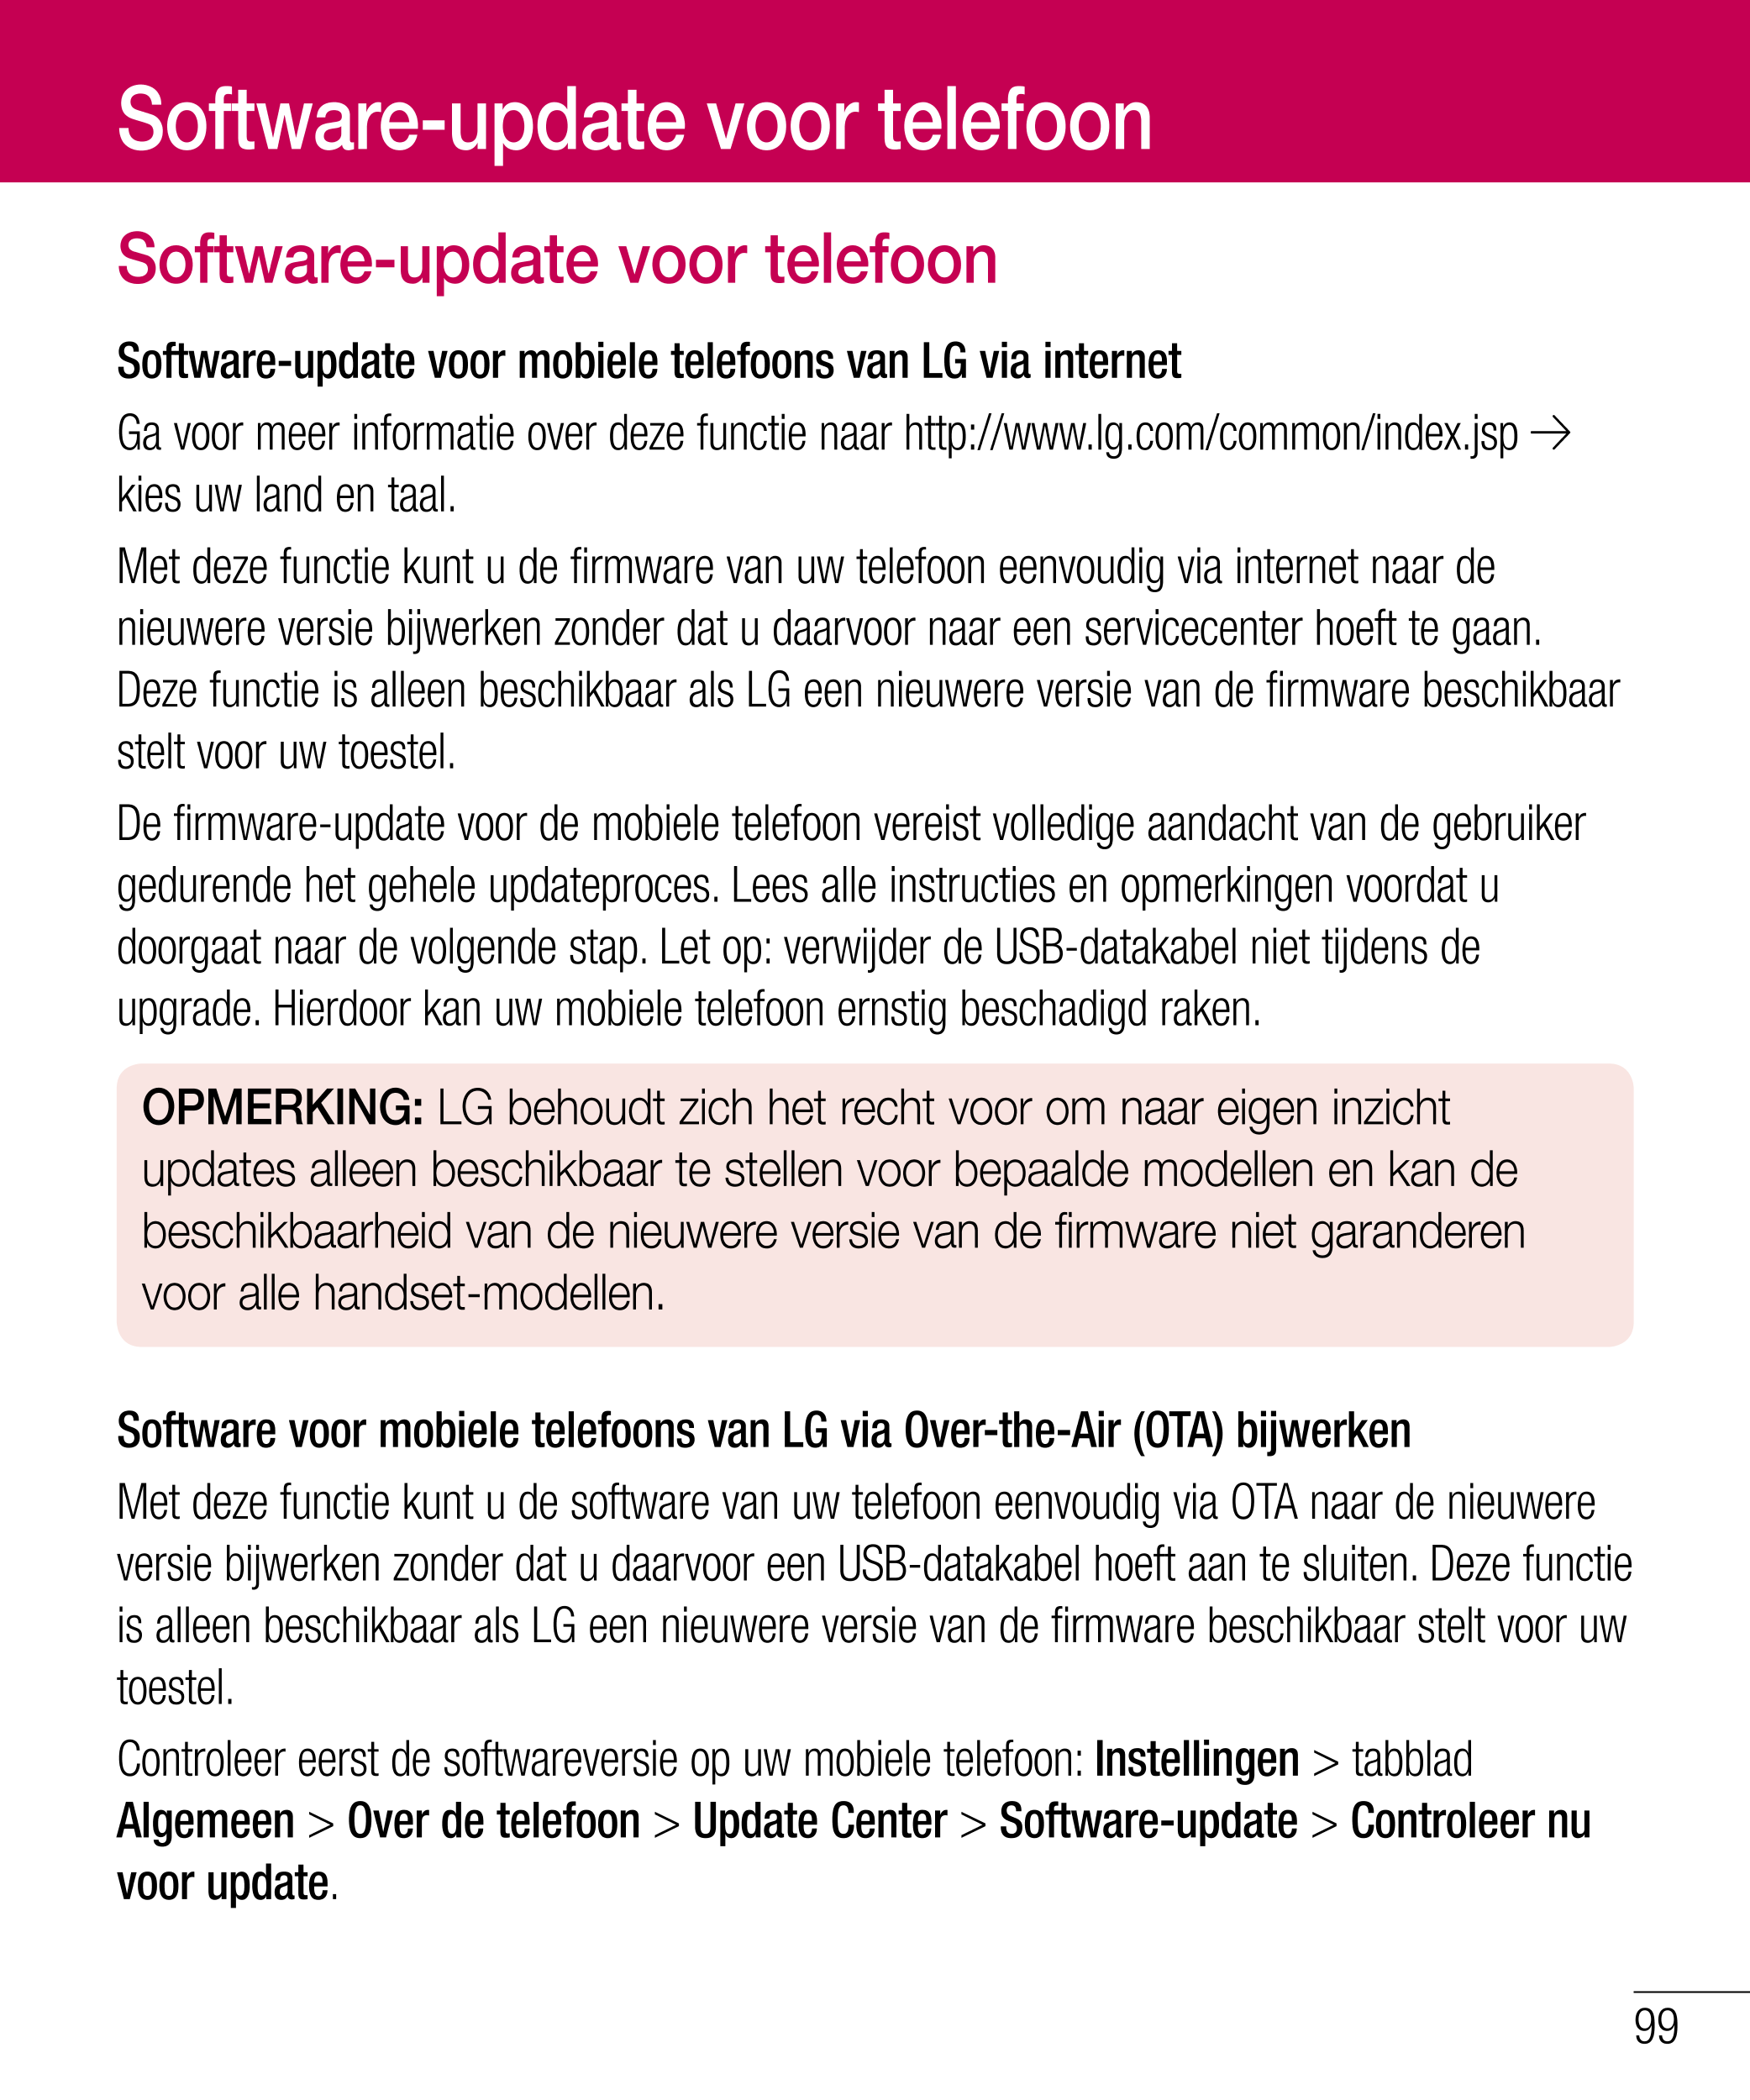 Software-update voor telefoon
Software-update voor telefoon
Software-update voor mobiele telefoons van LG via internet
Ga voor m